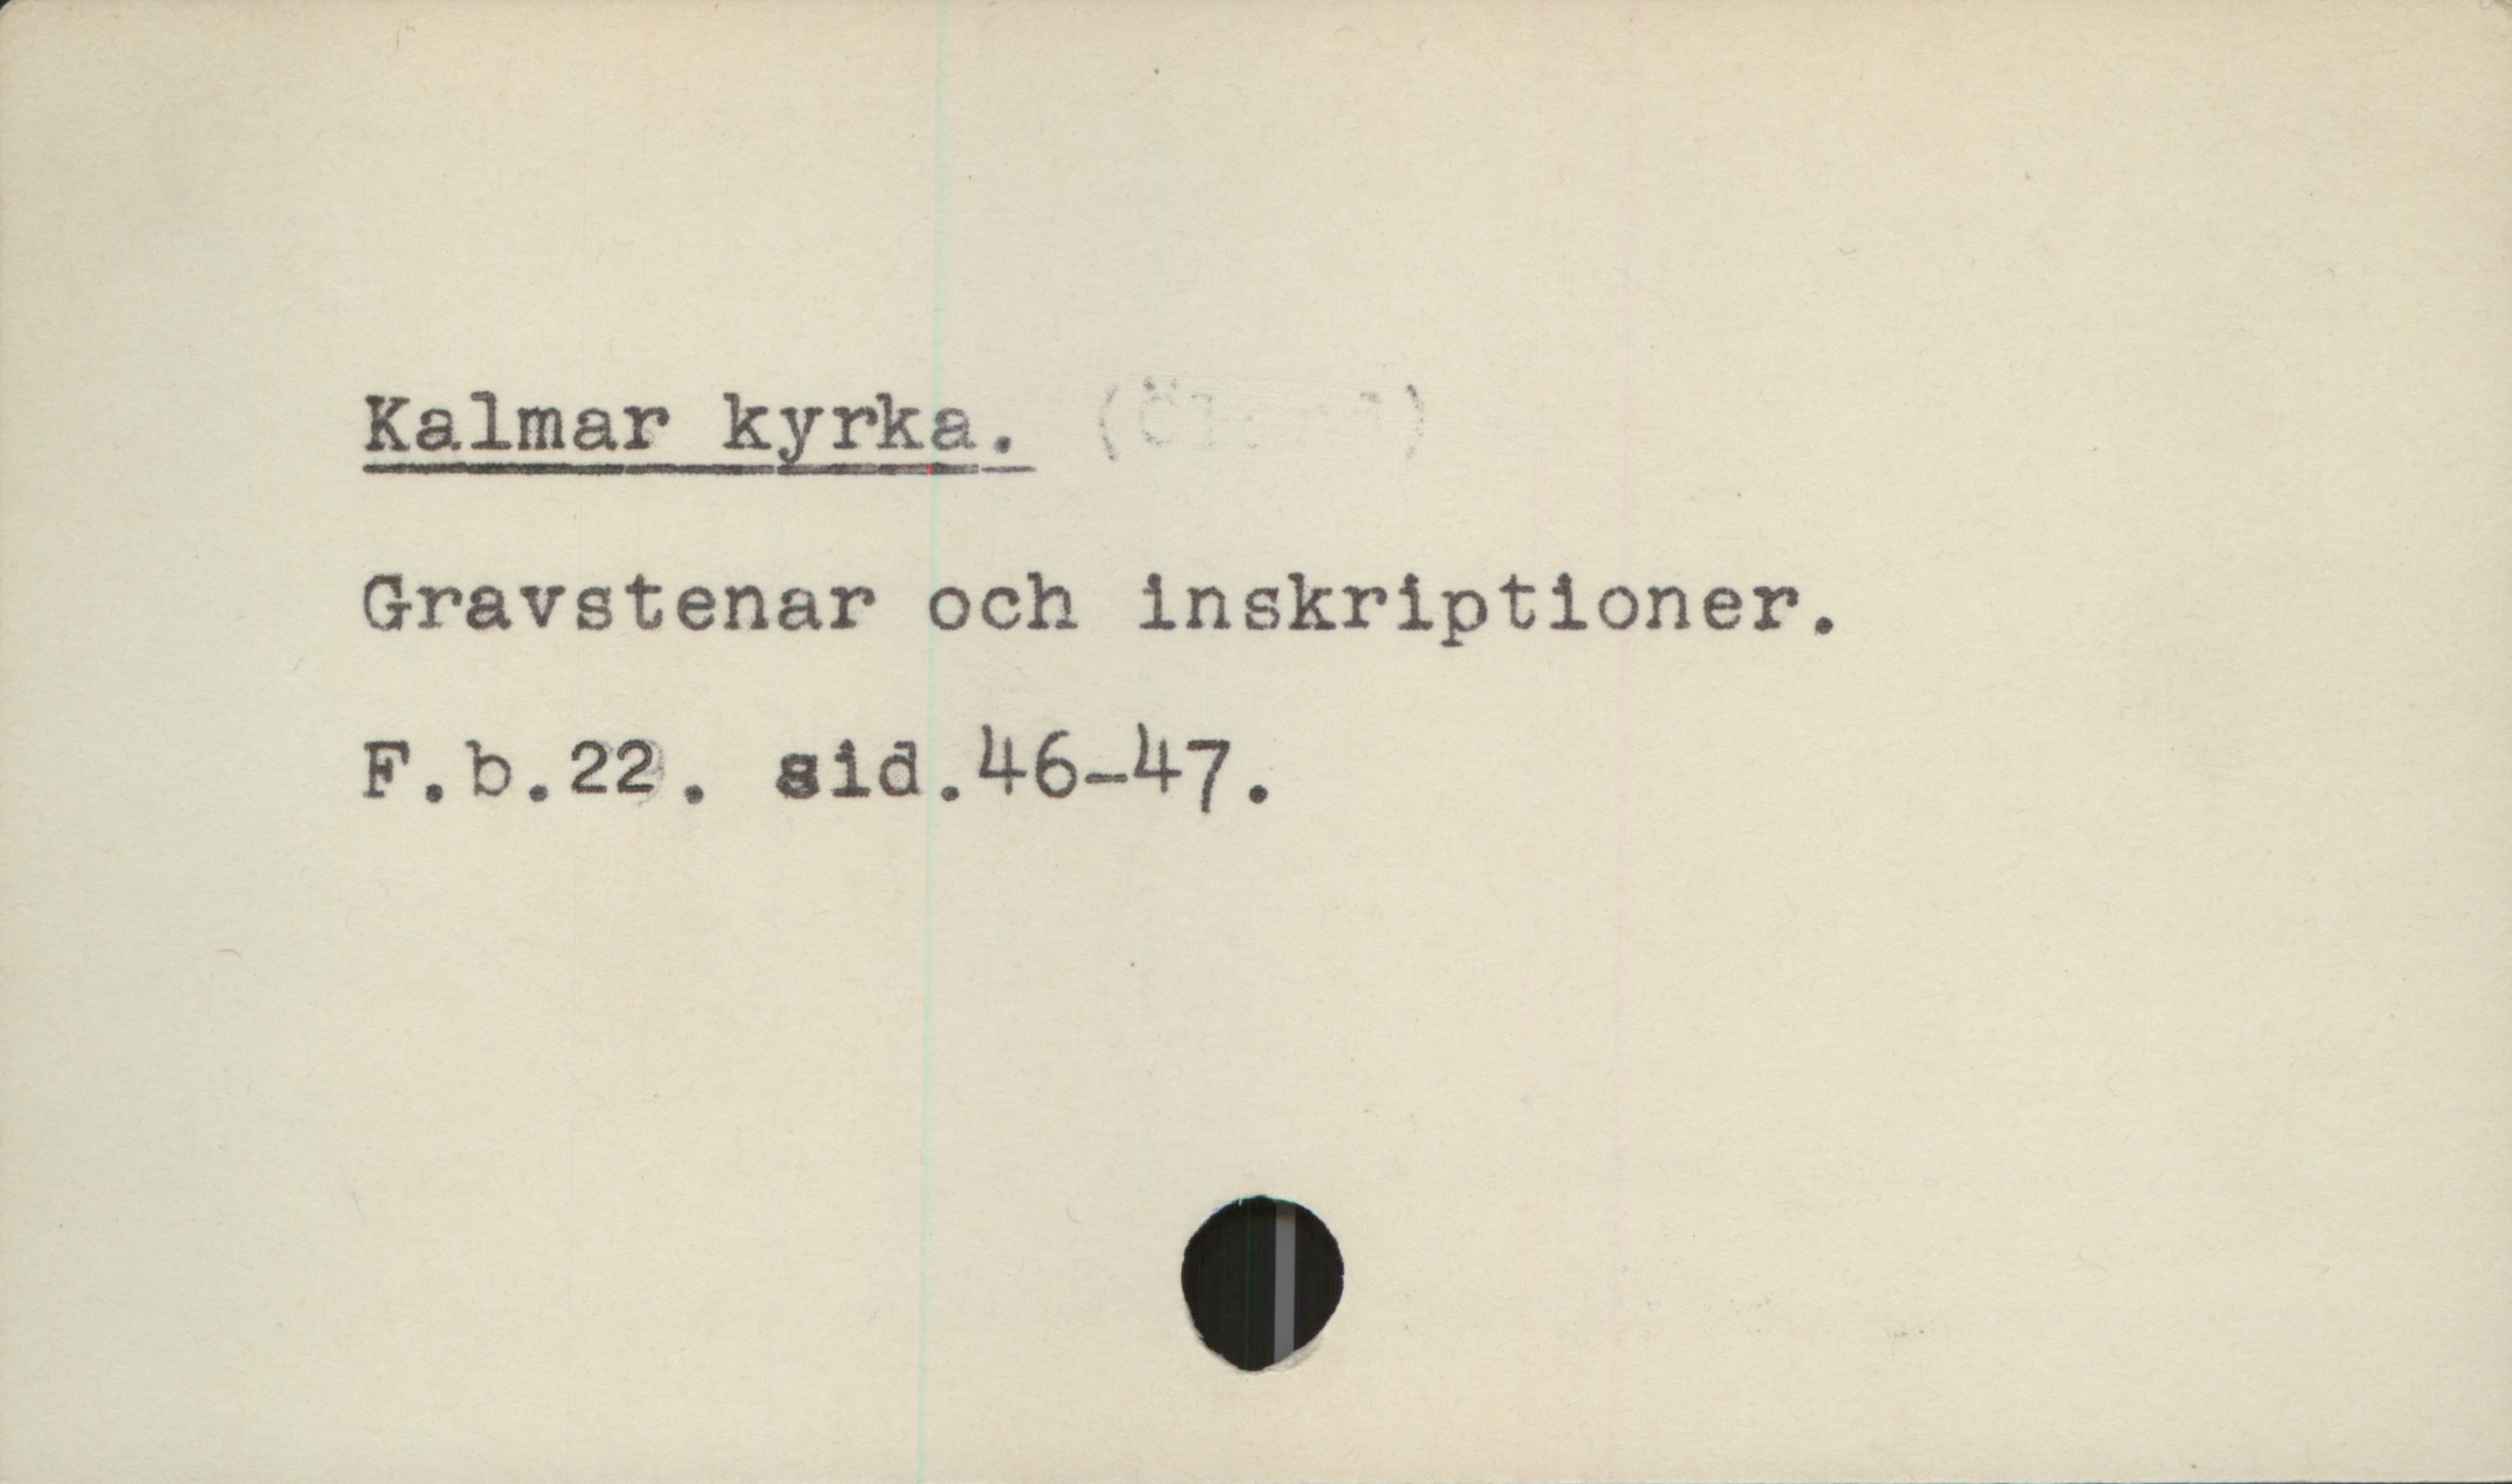  Kalmar kyrka. - '
Gravstenar och inskriptioner.
F.b.22. sid.H6-h7,.

